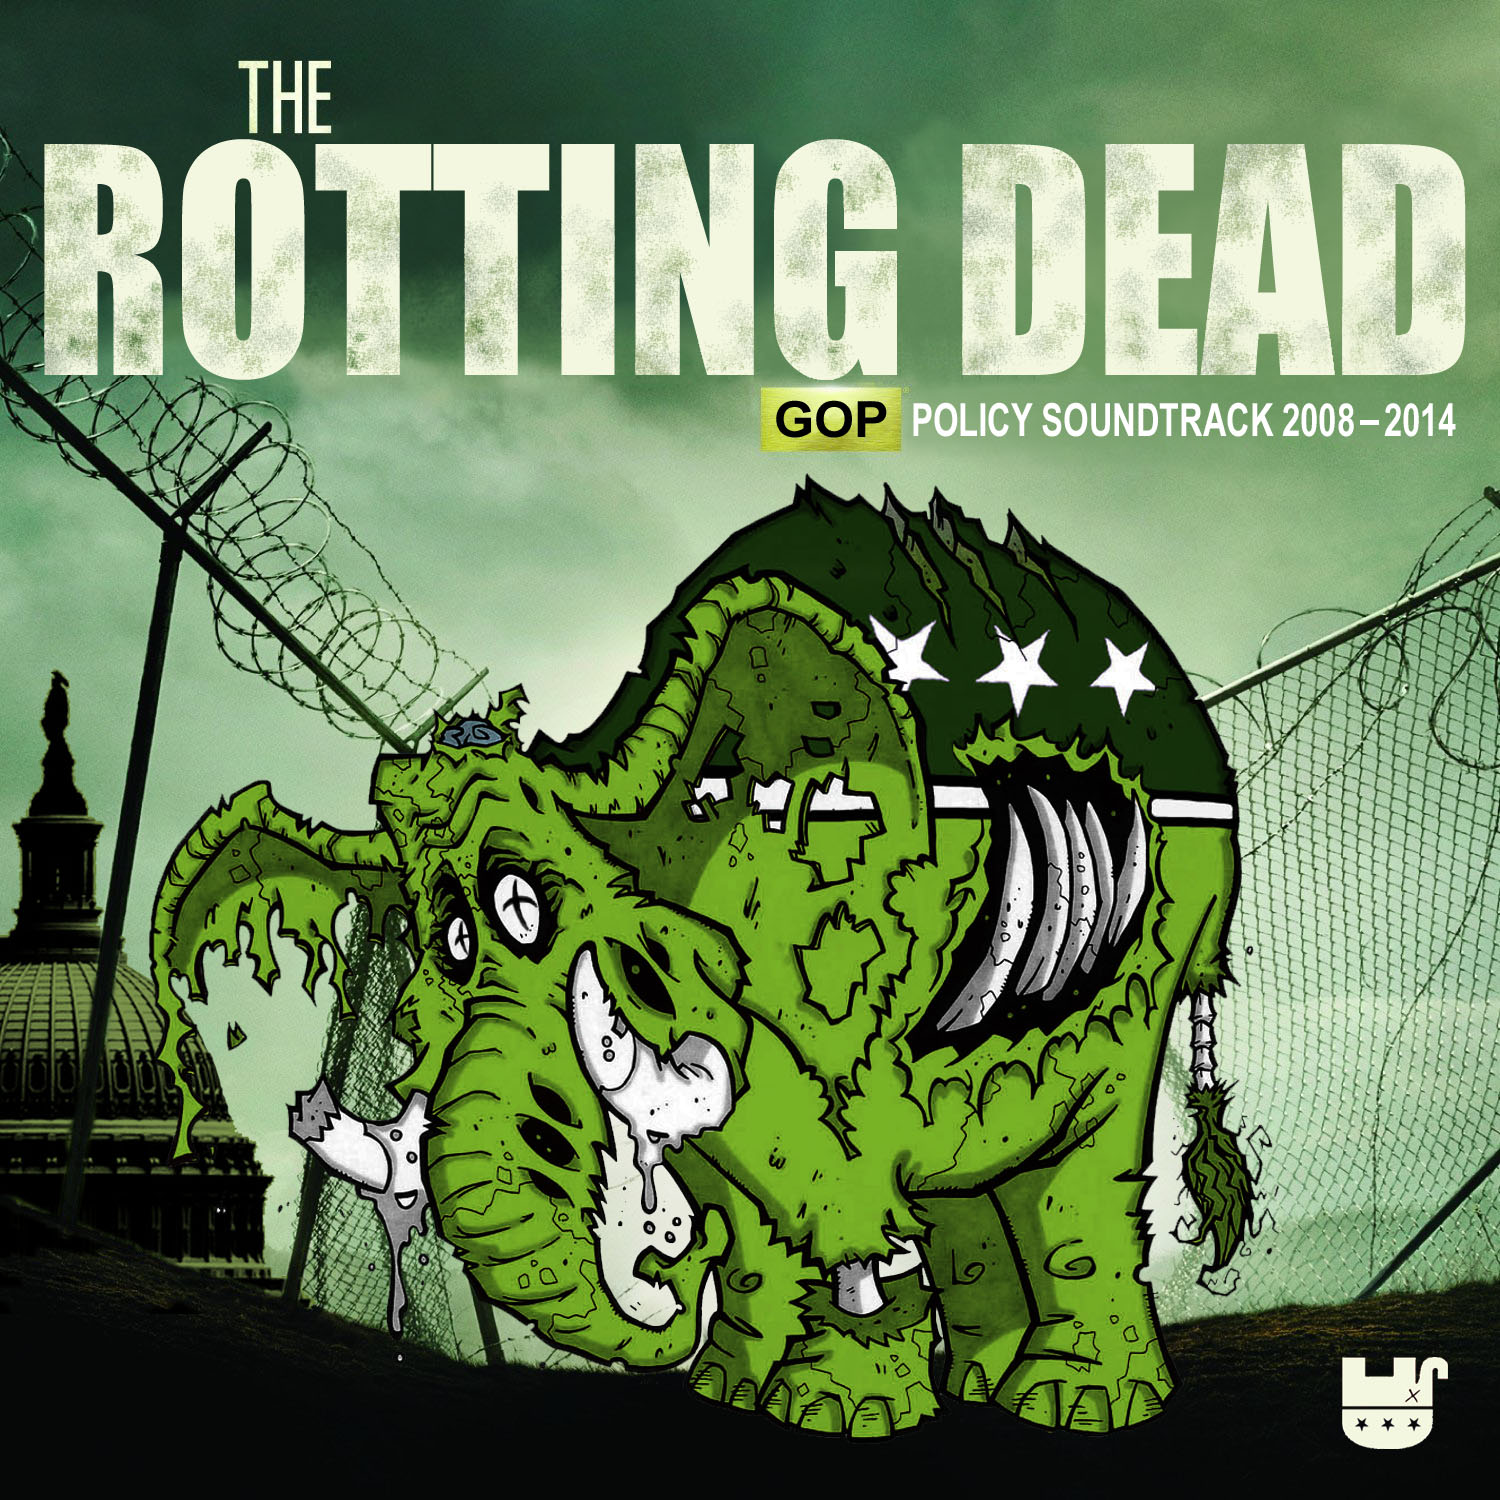 Album cover parody of Original Soundtrack by Soundtrack